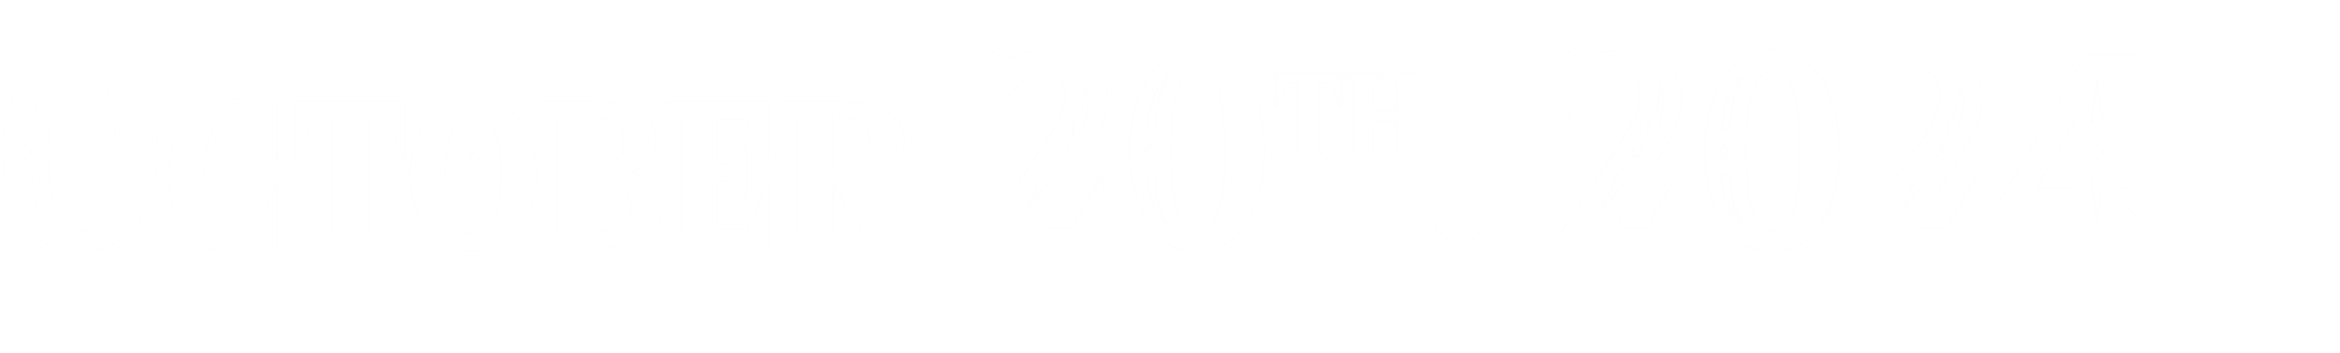 sub-header: October 20th, 2024